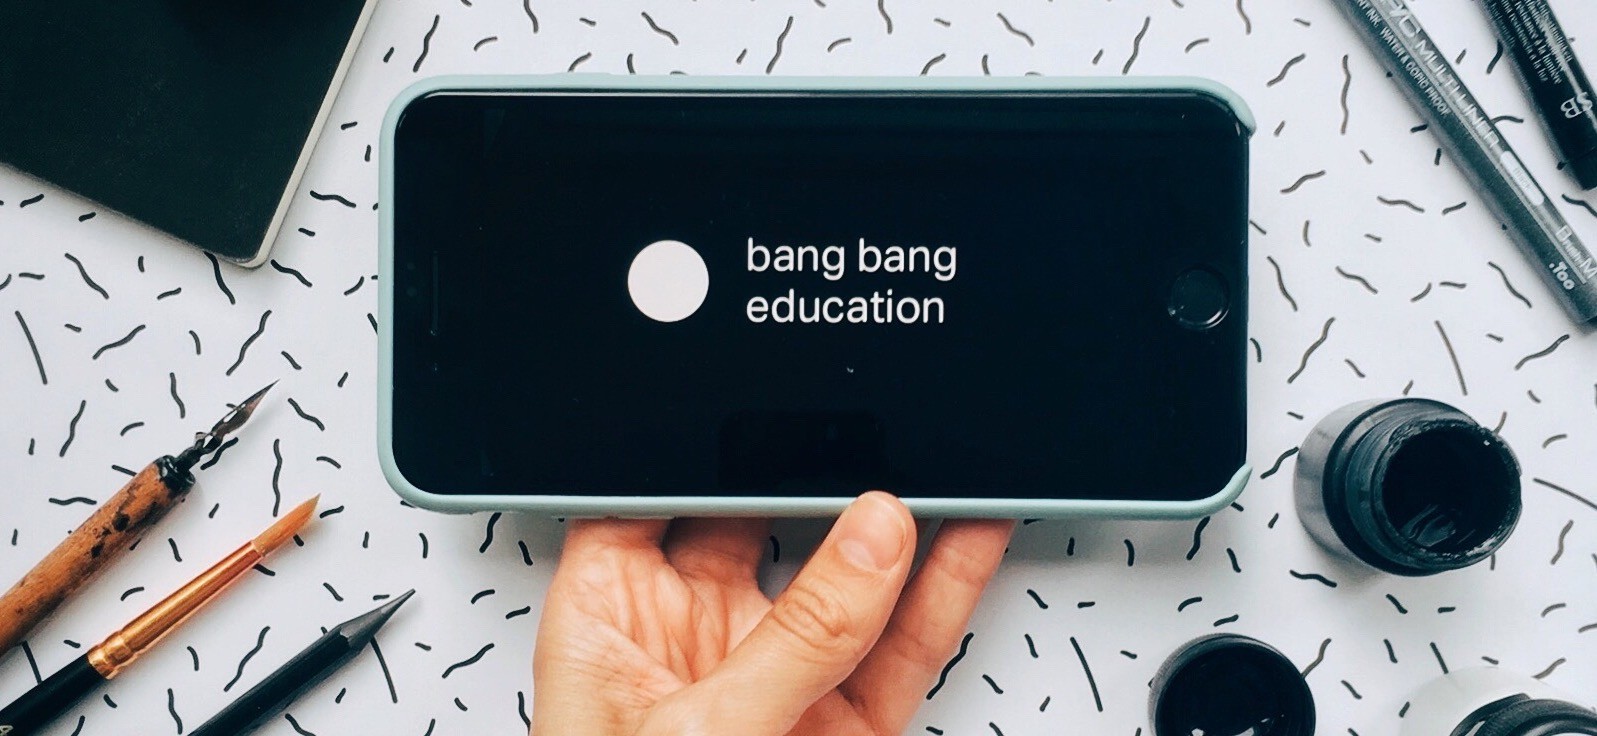 Самое время стать дизайнером — школа Bang Bang Education сделала бесплатными 46 онлайн-курсов